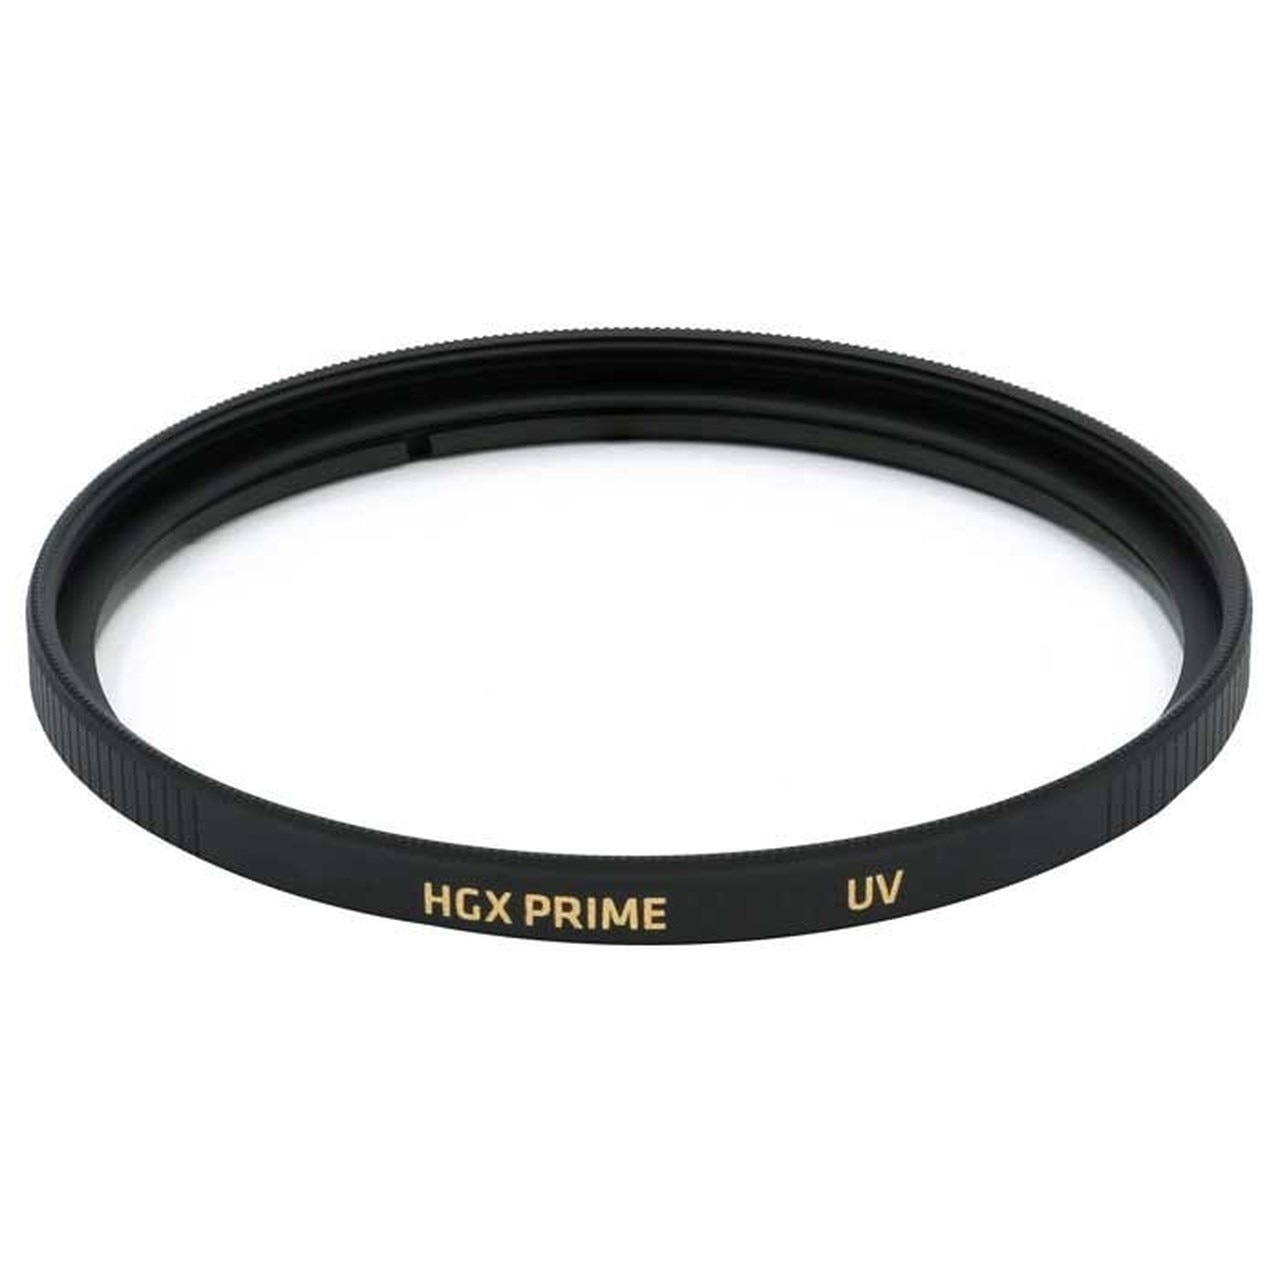 Promaster 6704 55mm UV HGX Prime Filter